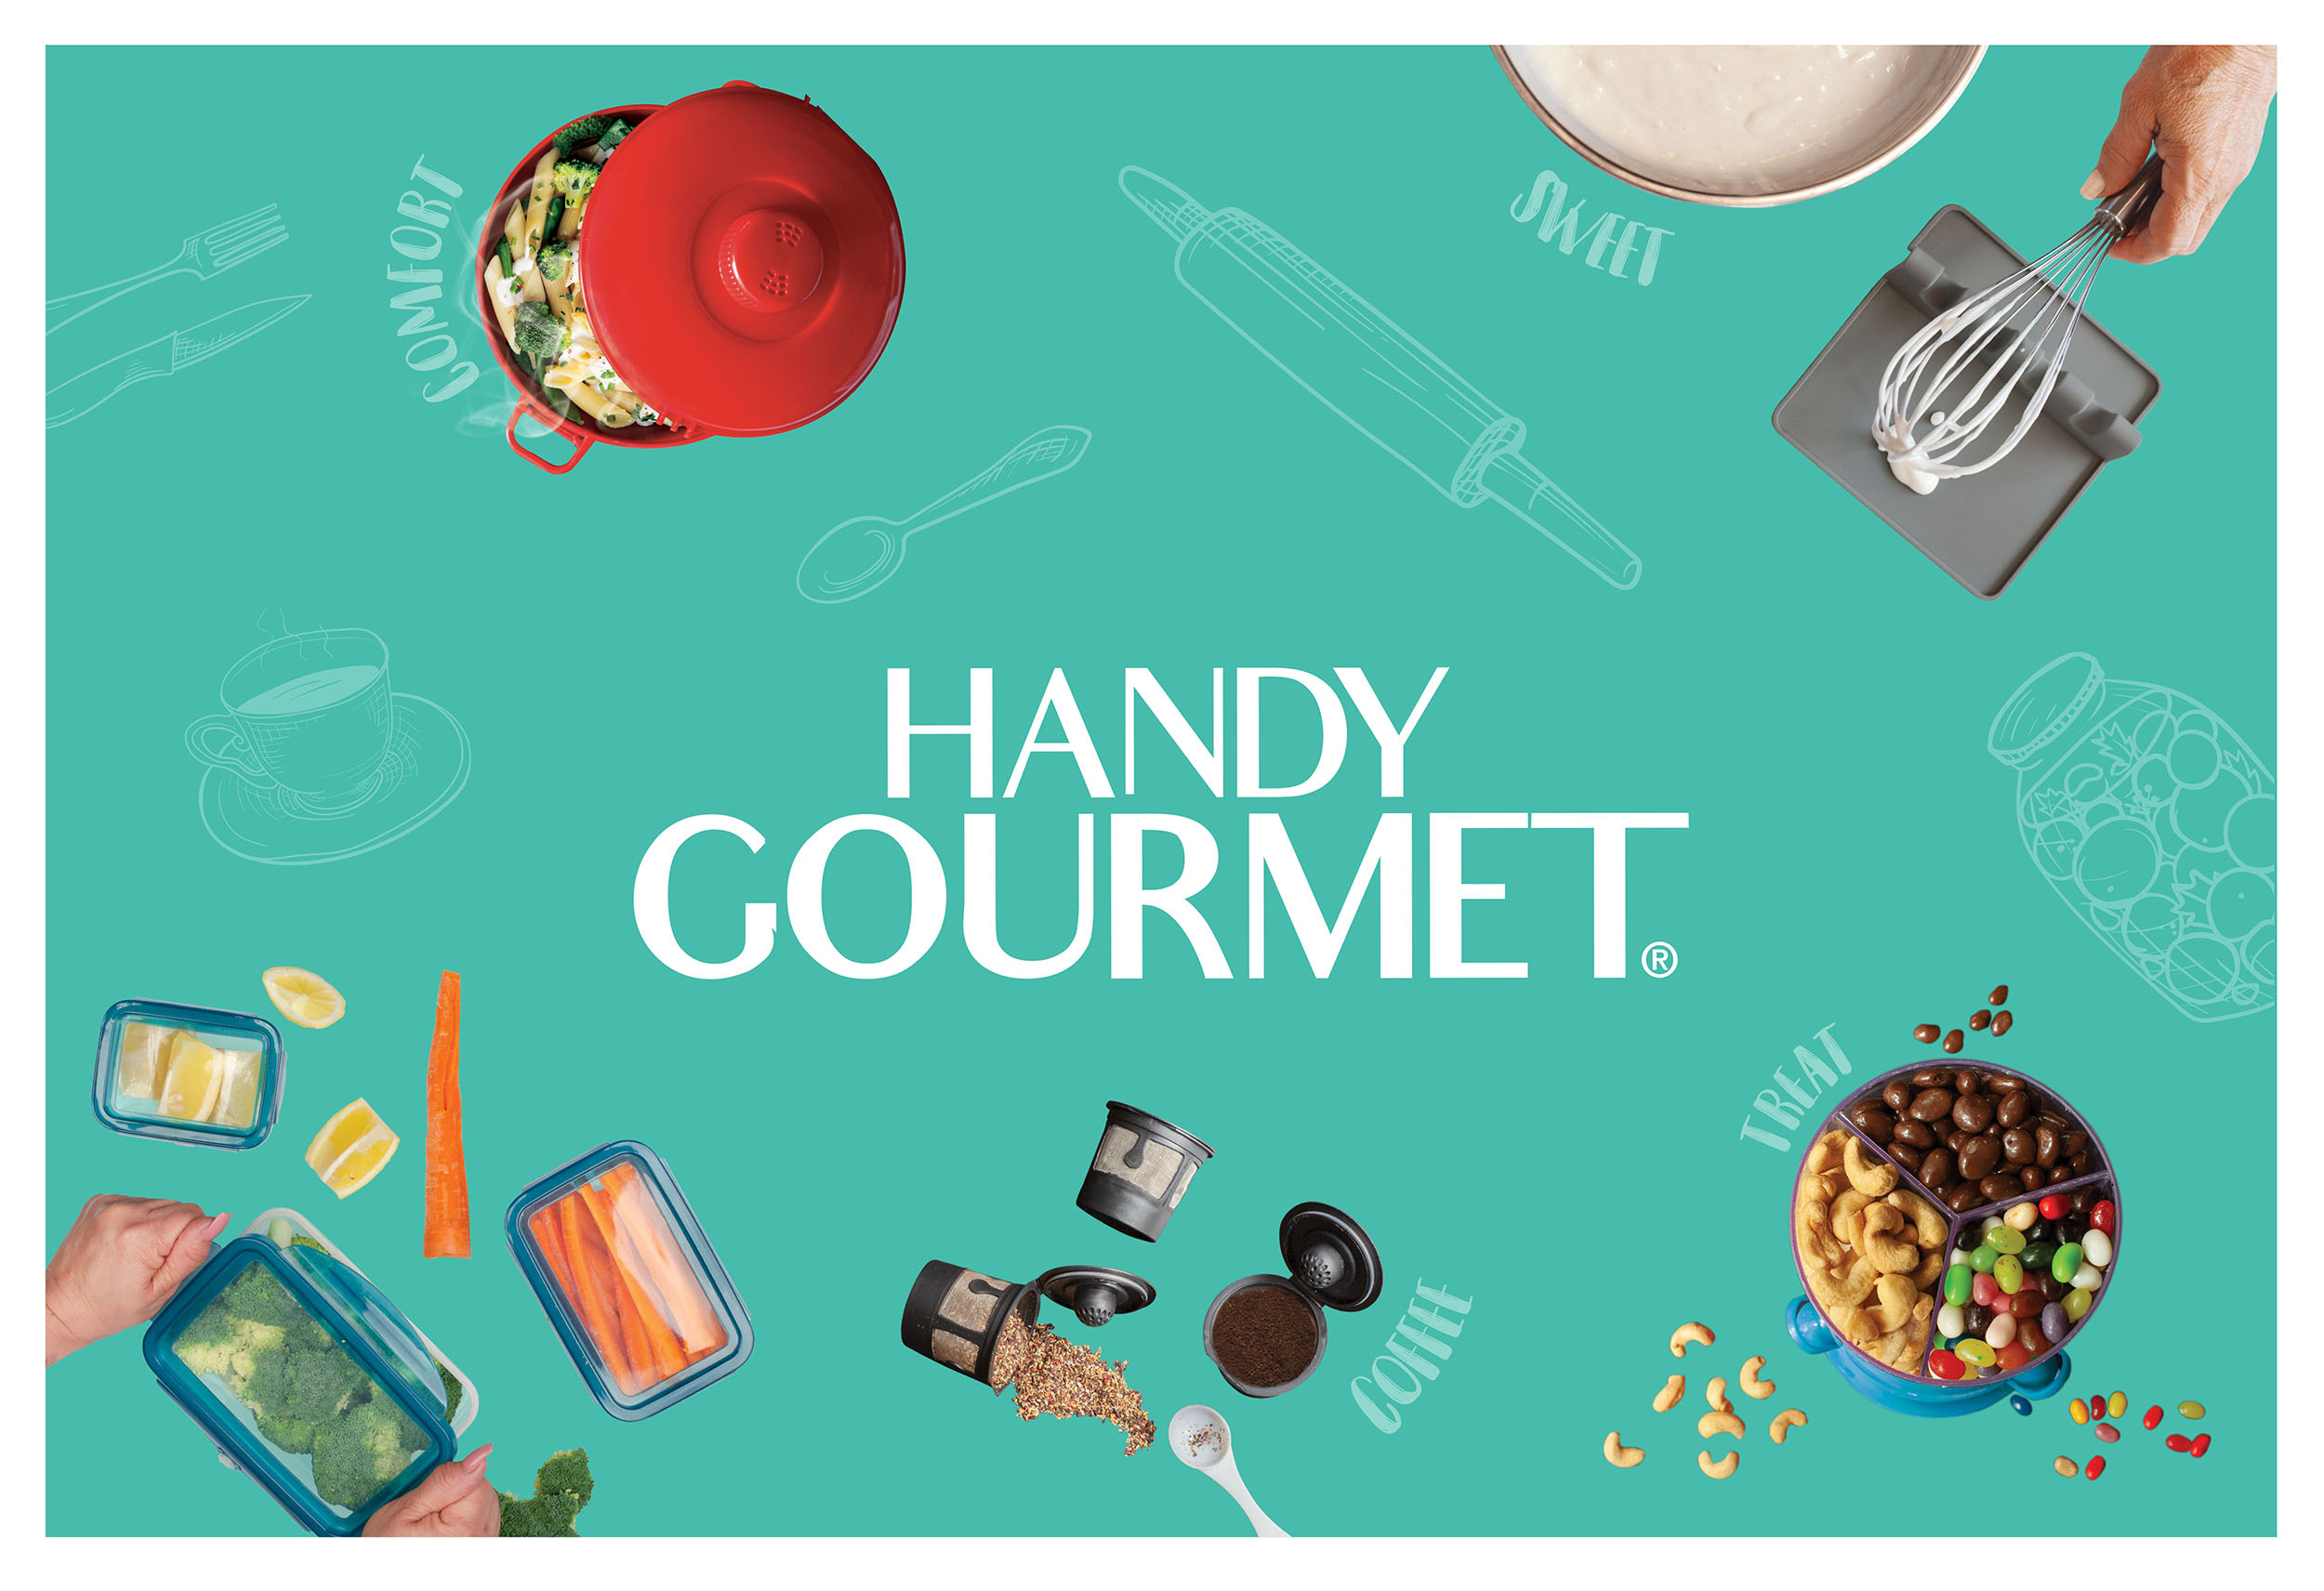 Handy Gourmet – JAIME DOMINGUEZ